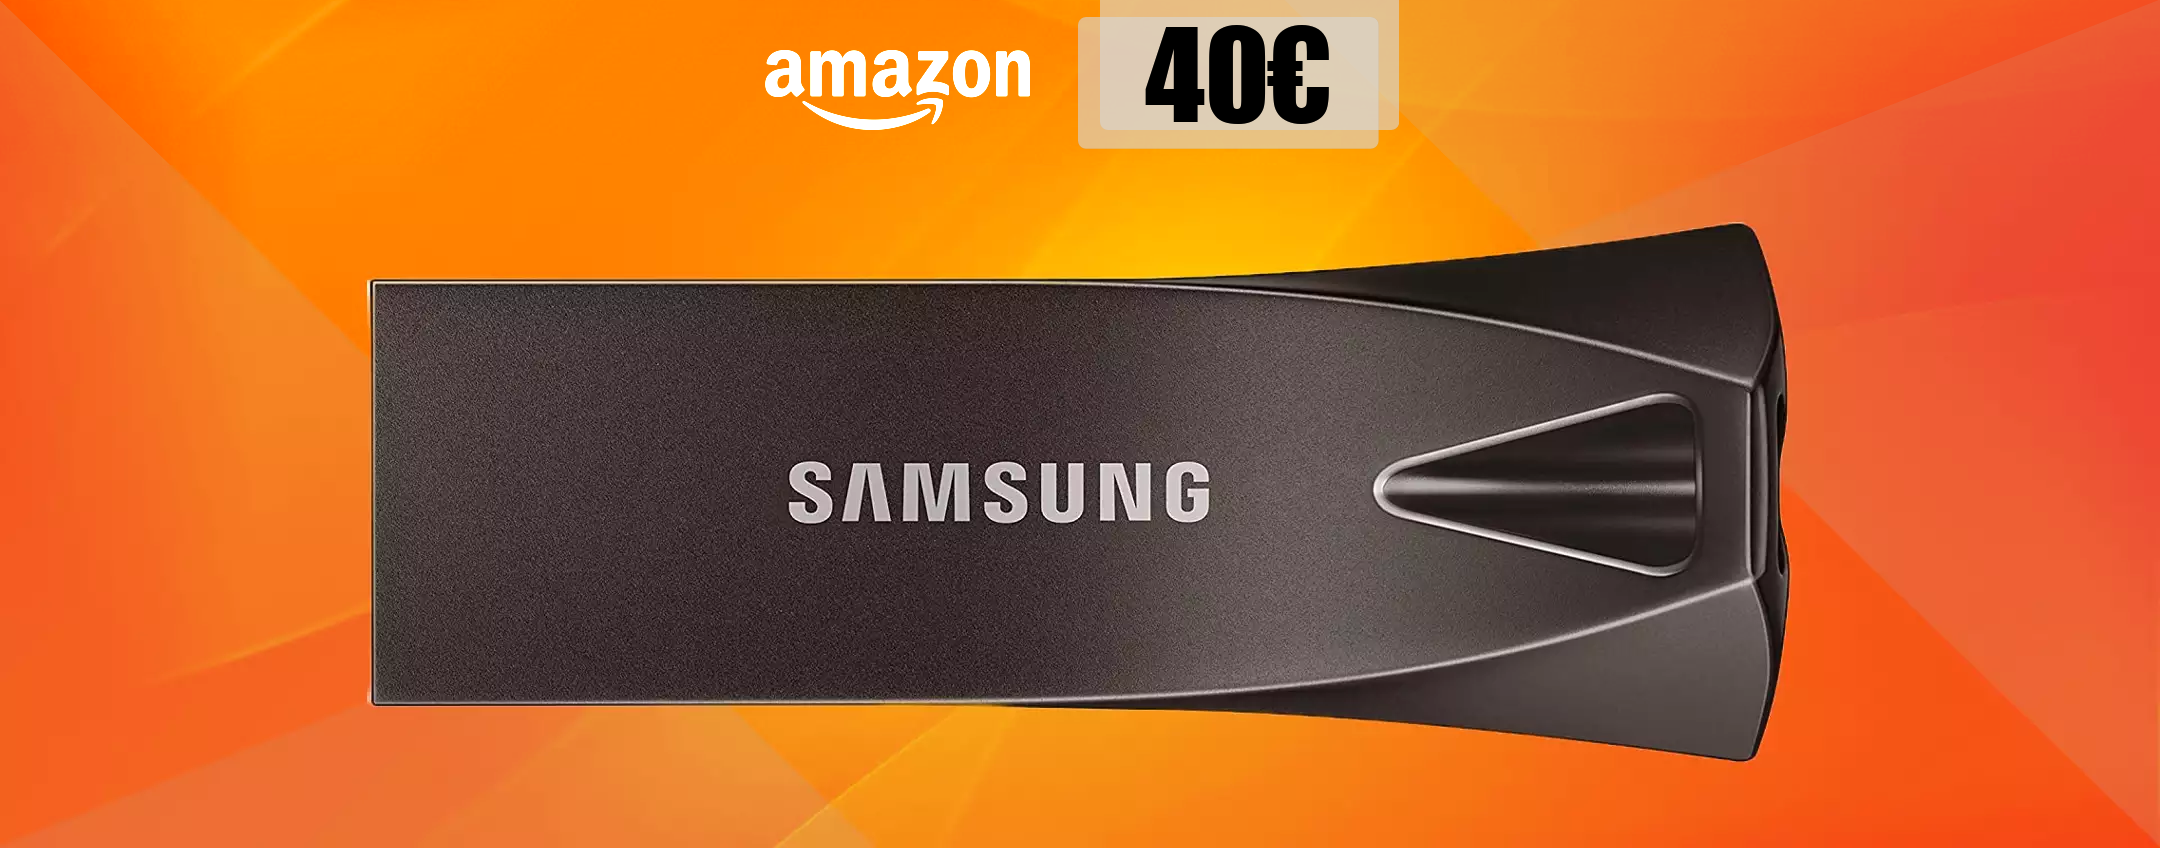 Chiavetta USB 256GB Samsung, VELOCE e RESISTENTE: ti bastano 40€